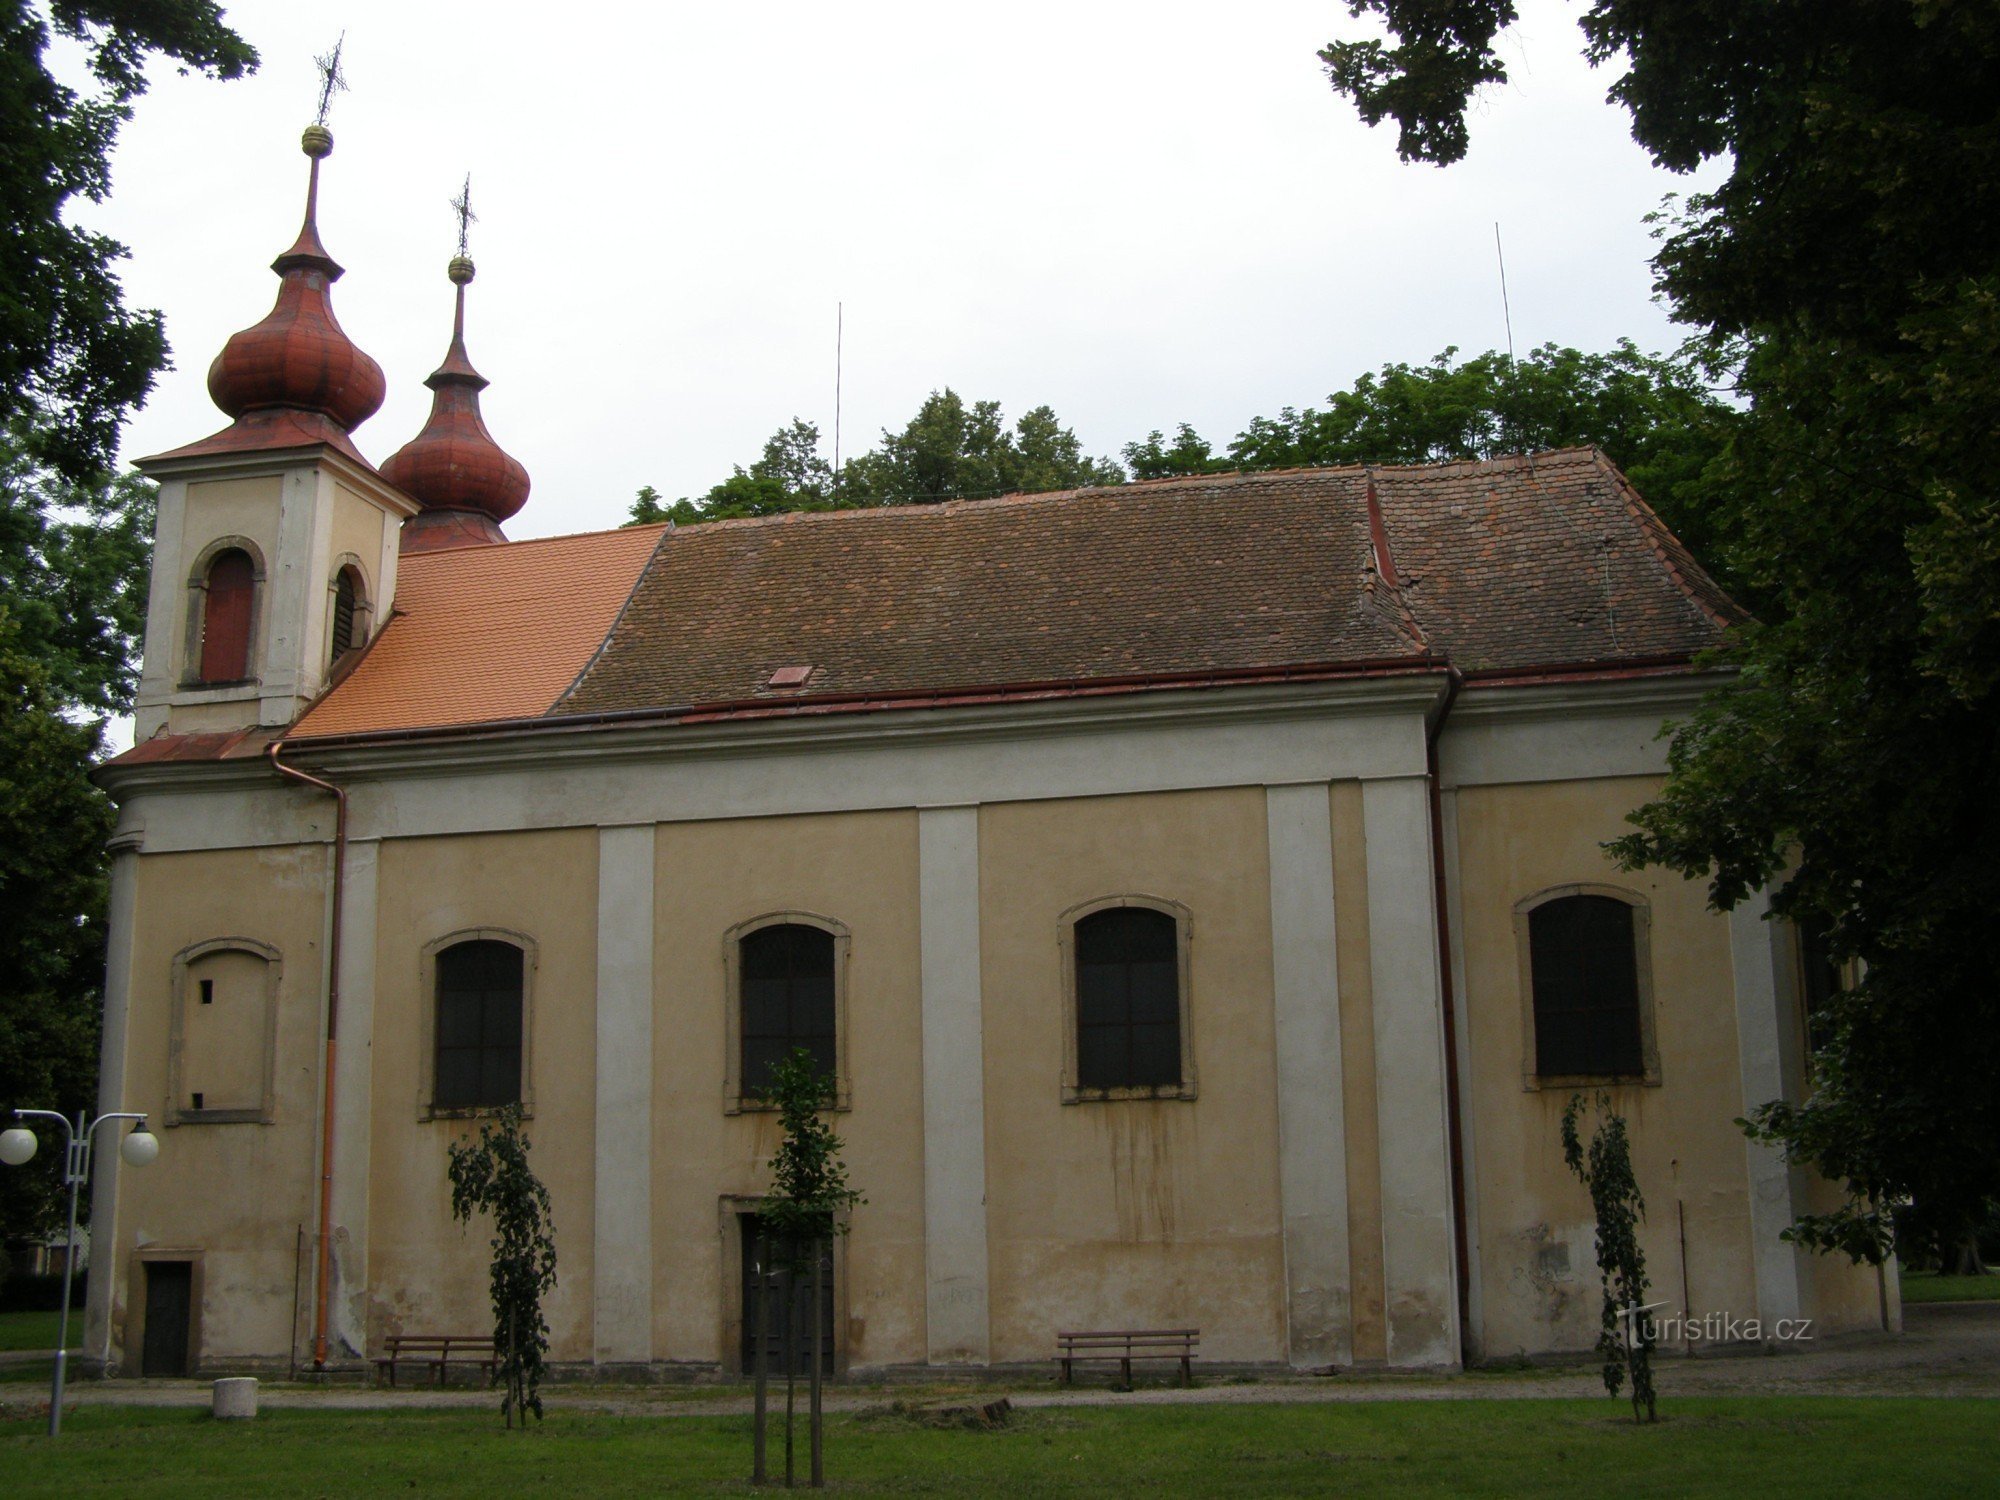 Nový Bydžov - Den heliga treenighetens kyrka